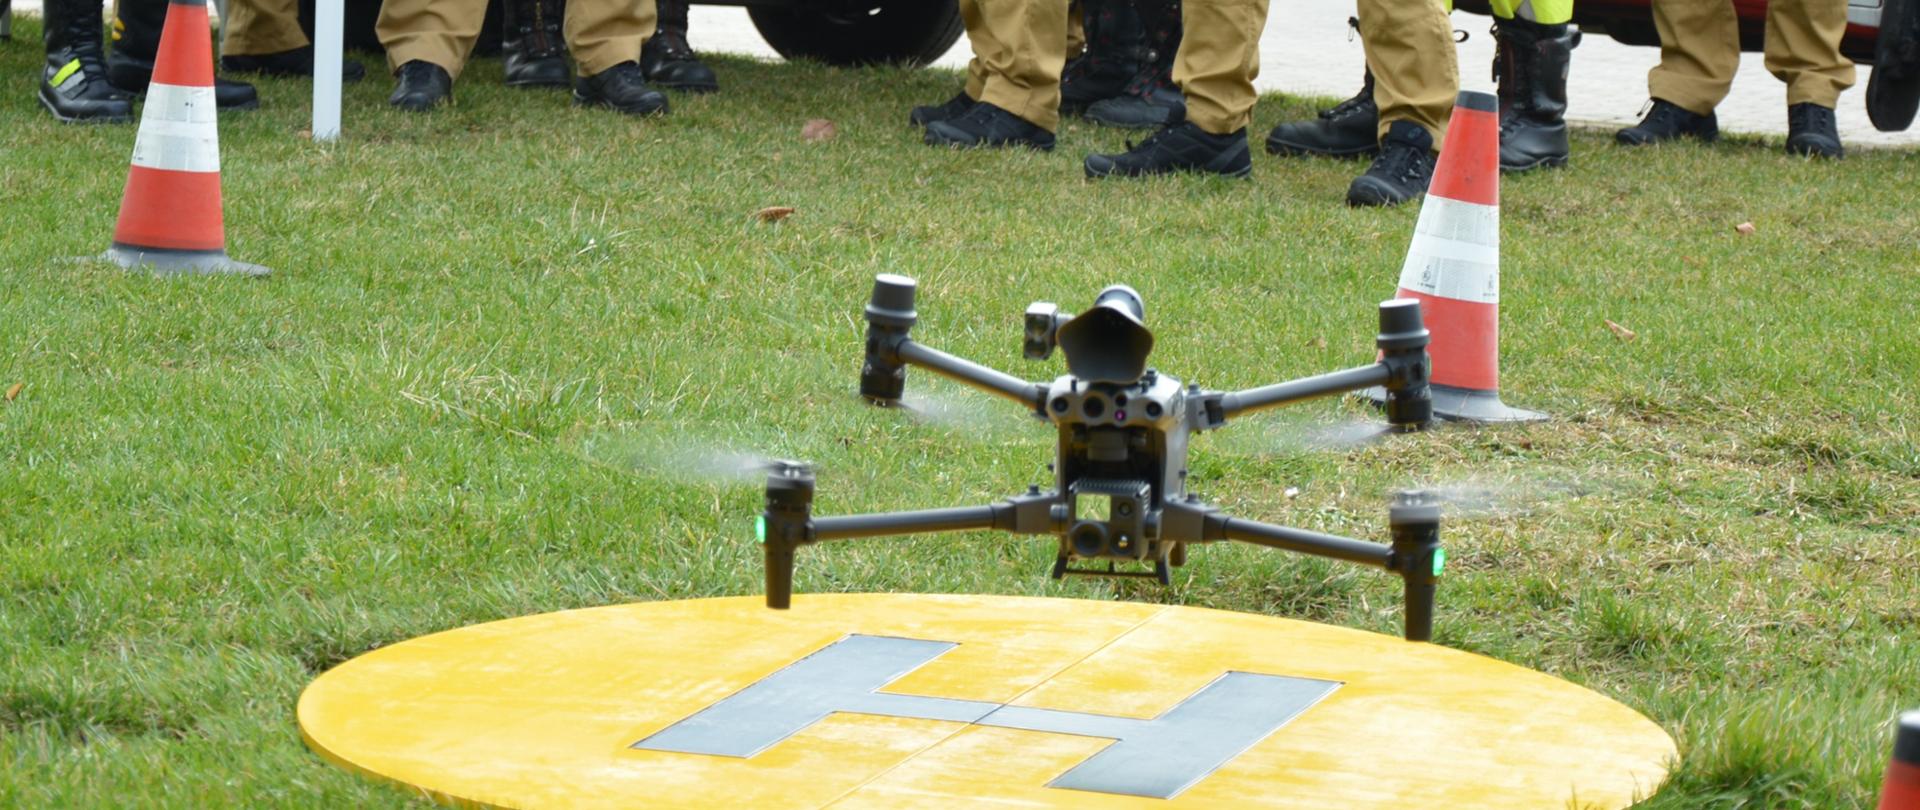 Dron startujący z miejsca wyznaczonego na lądowisko. Uczestnicy szkolenia przyglądają się dronowi.